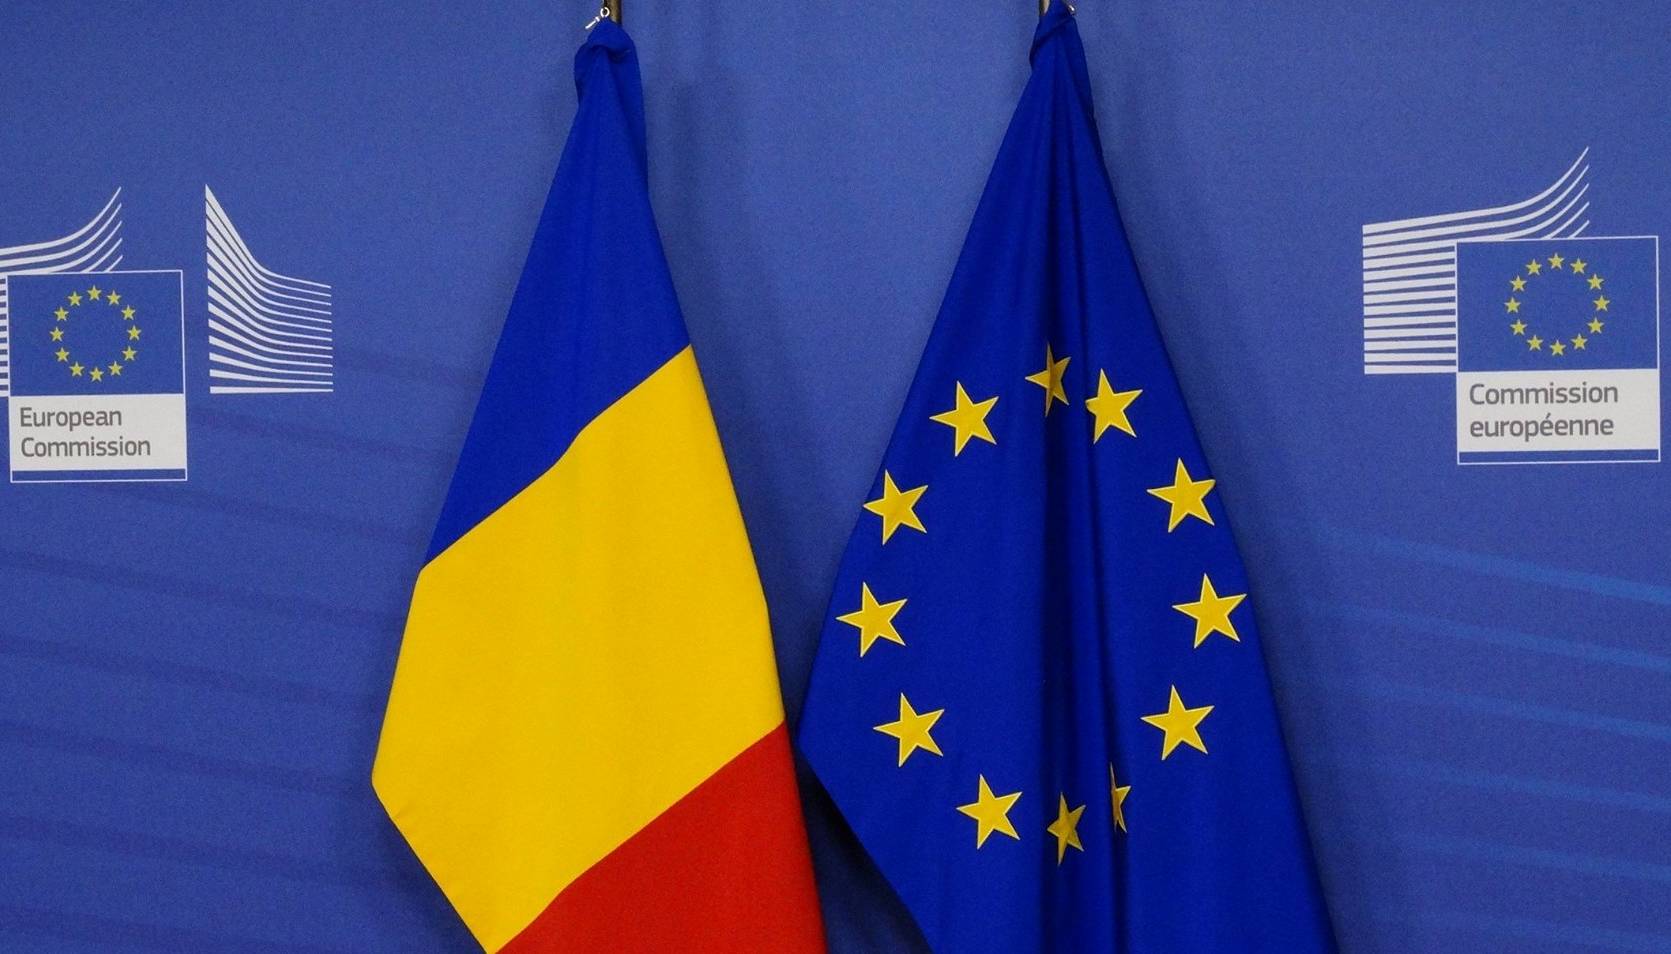 Comisia Europeana putea exclude Kaliningrad sanctiunile impotriva Rusiei